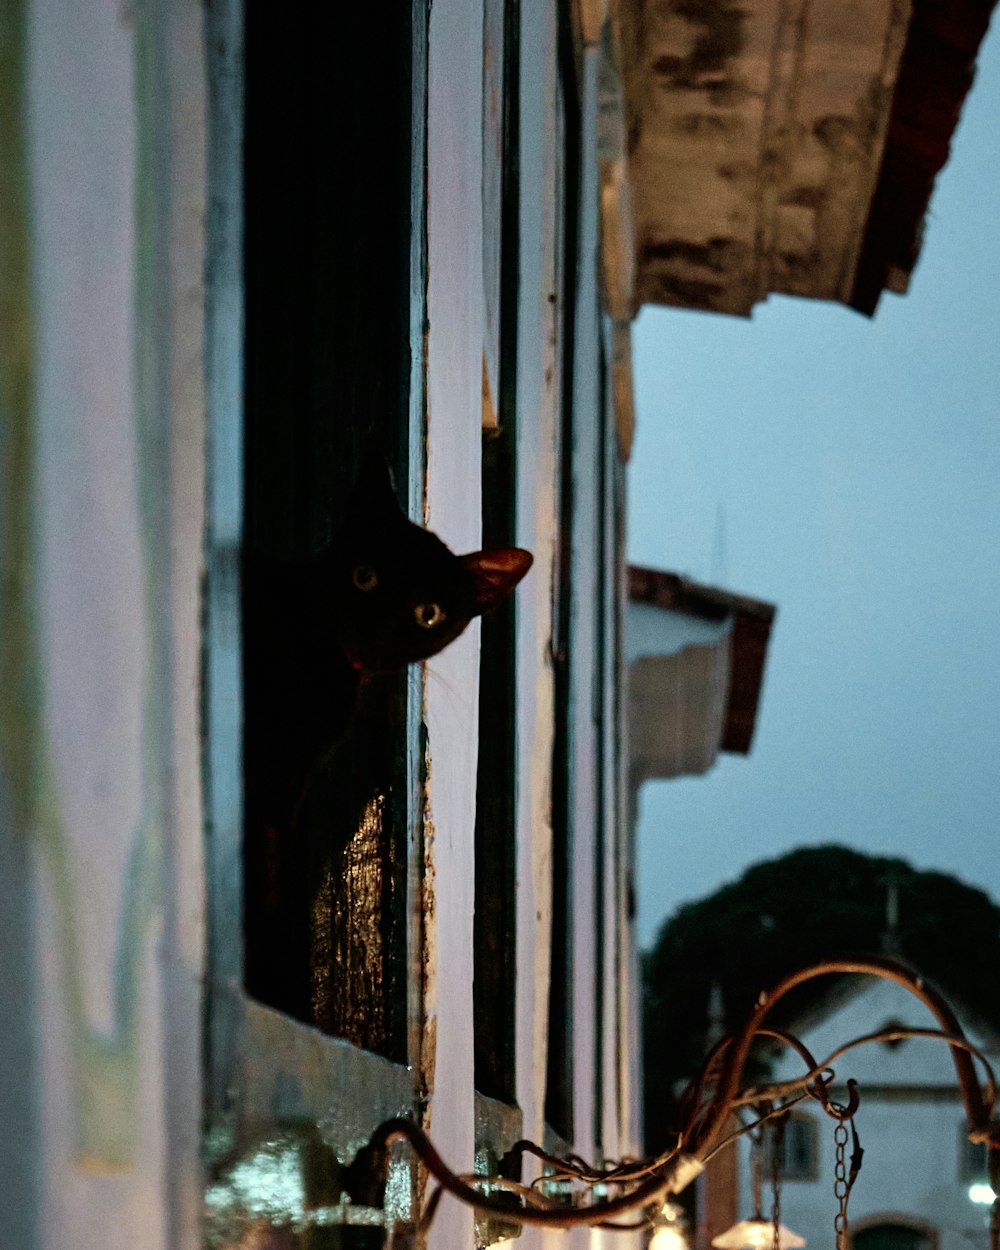 a black cat peeking out of a window